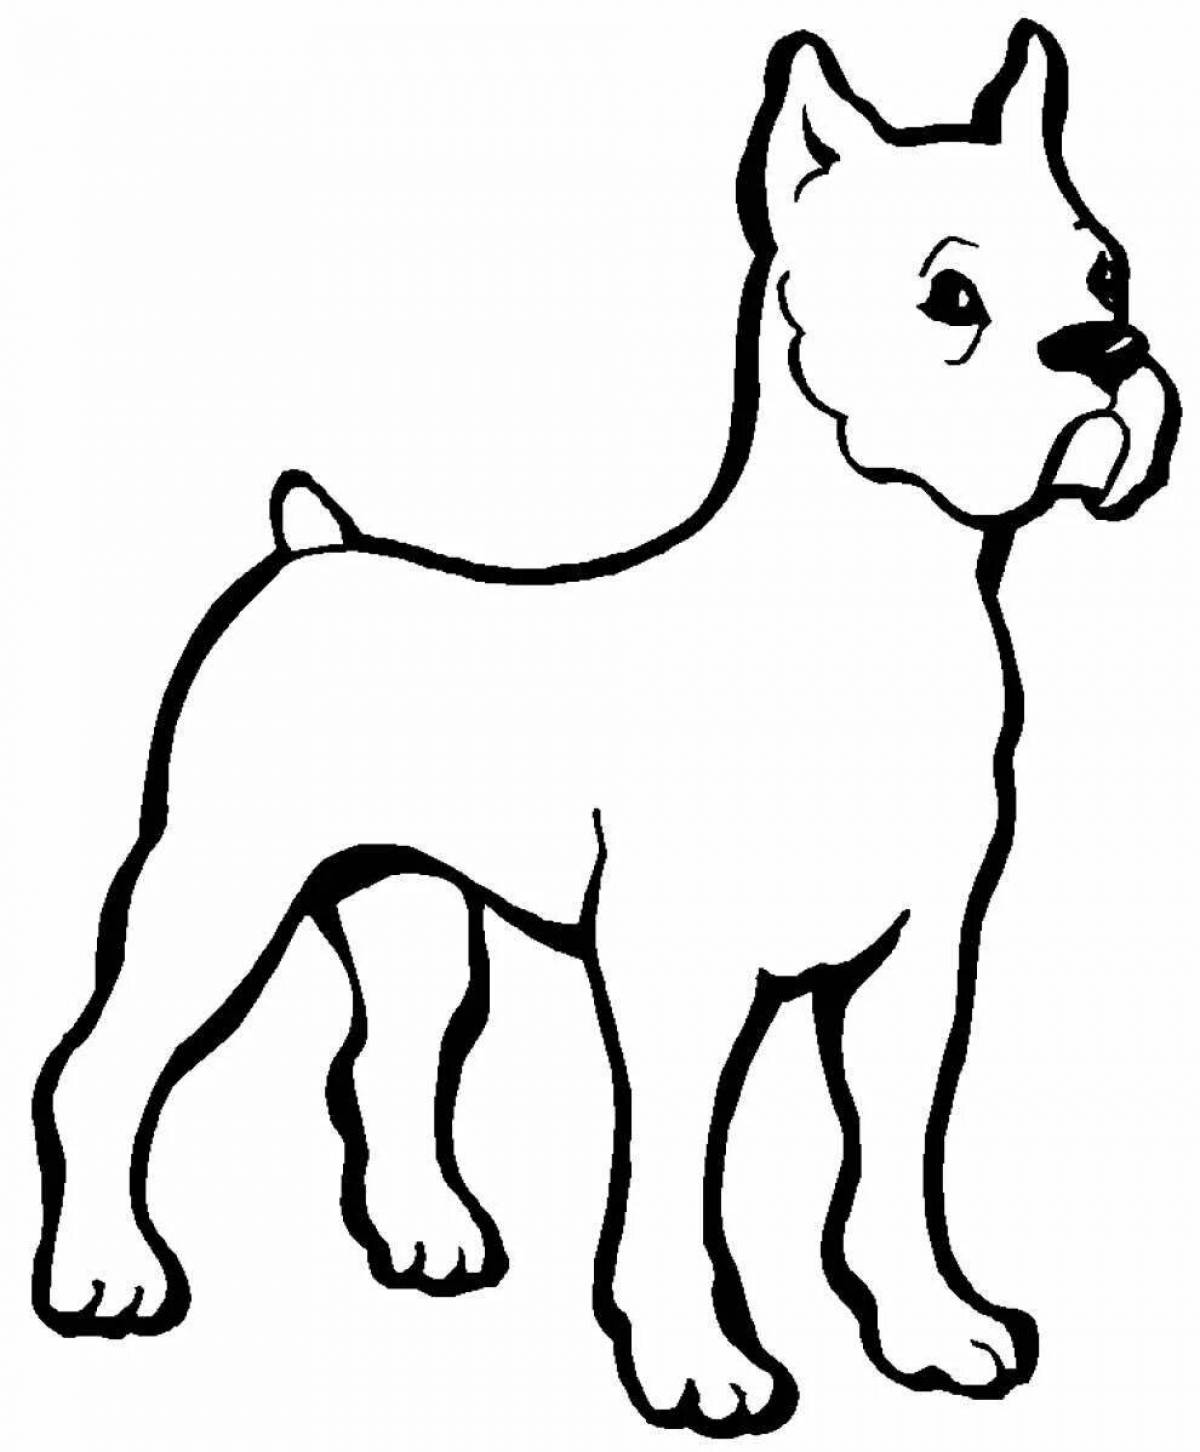 Увлекательная раскраска рисунок собаки